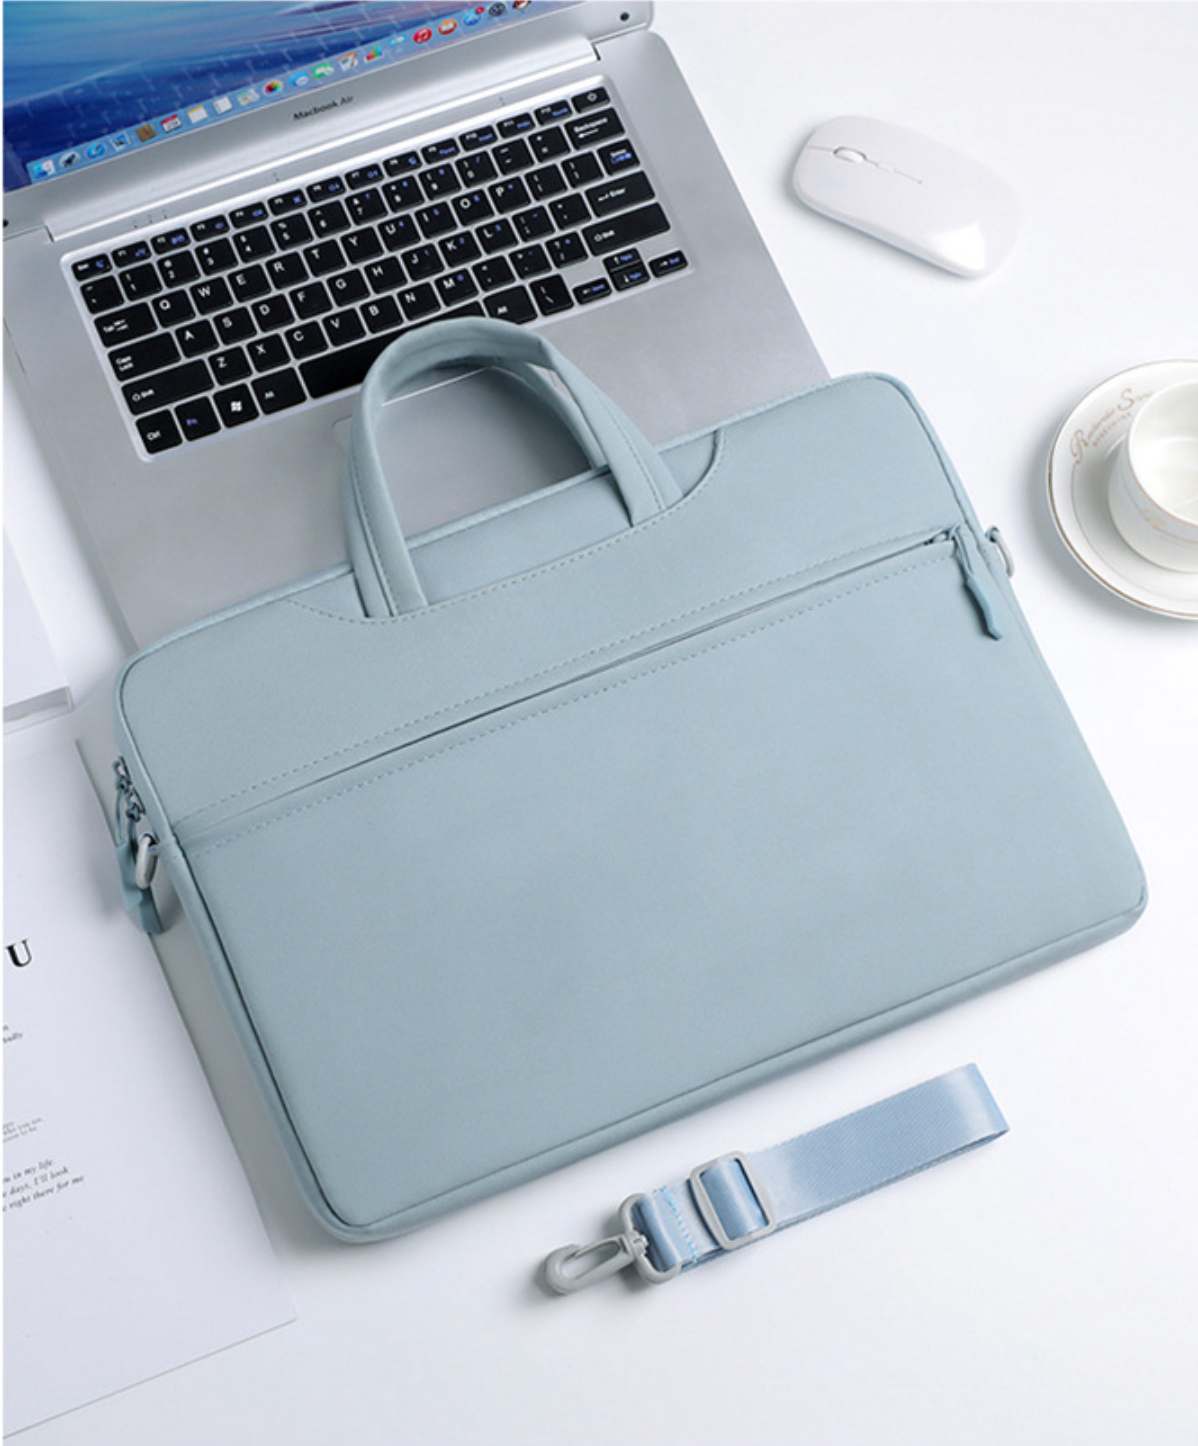 Túi xách chống sốc laptop máy tính surface, túi công sở nam nữ đeo chéo cặp đựng laptop